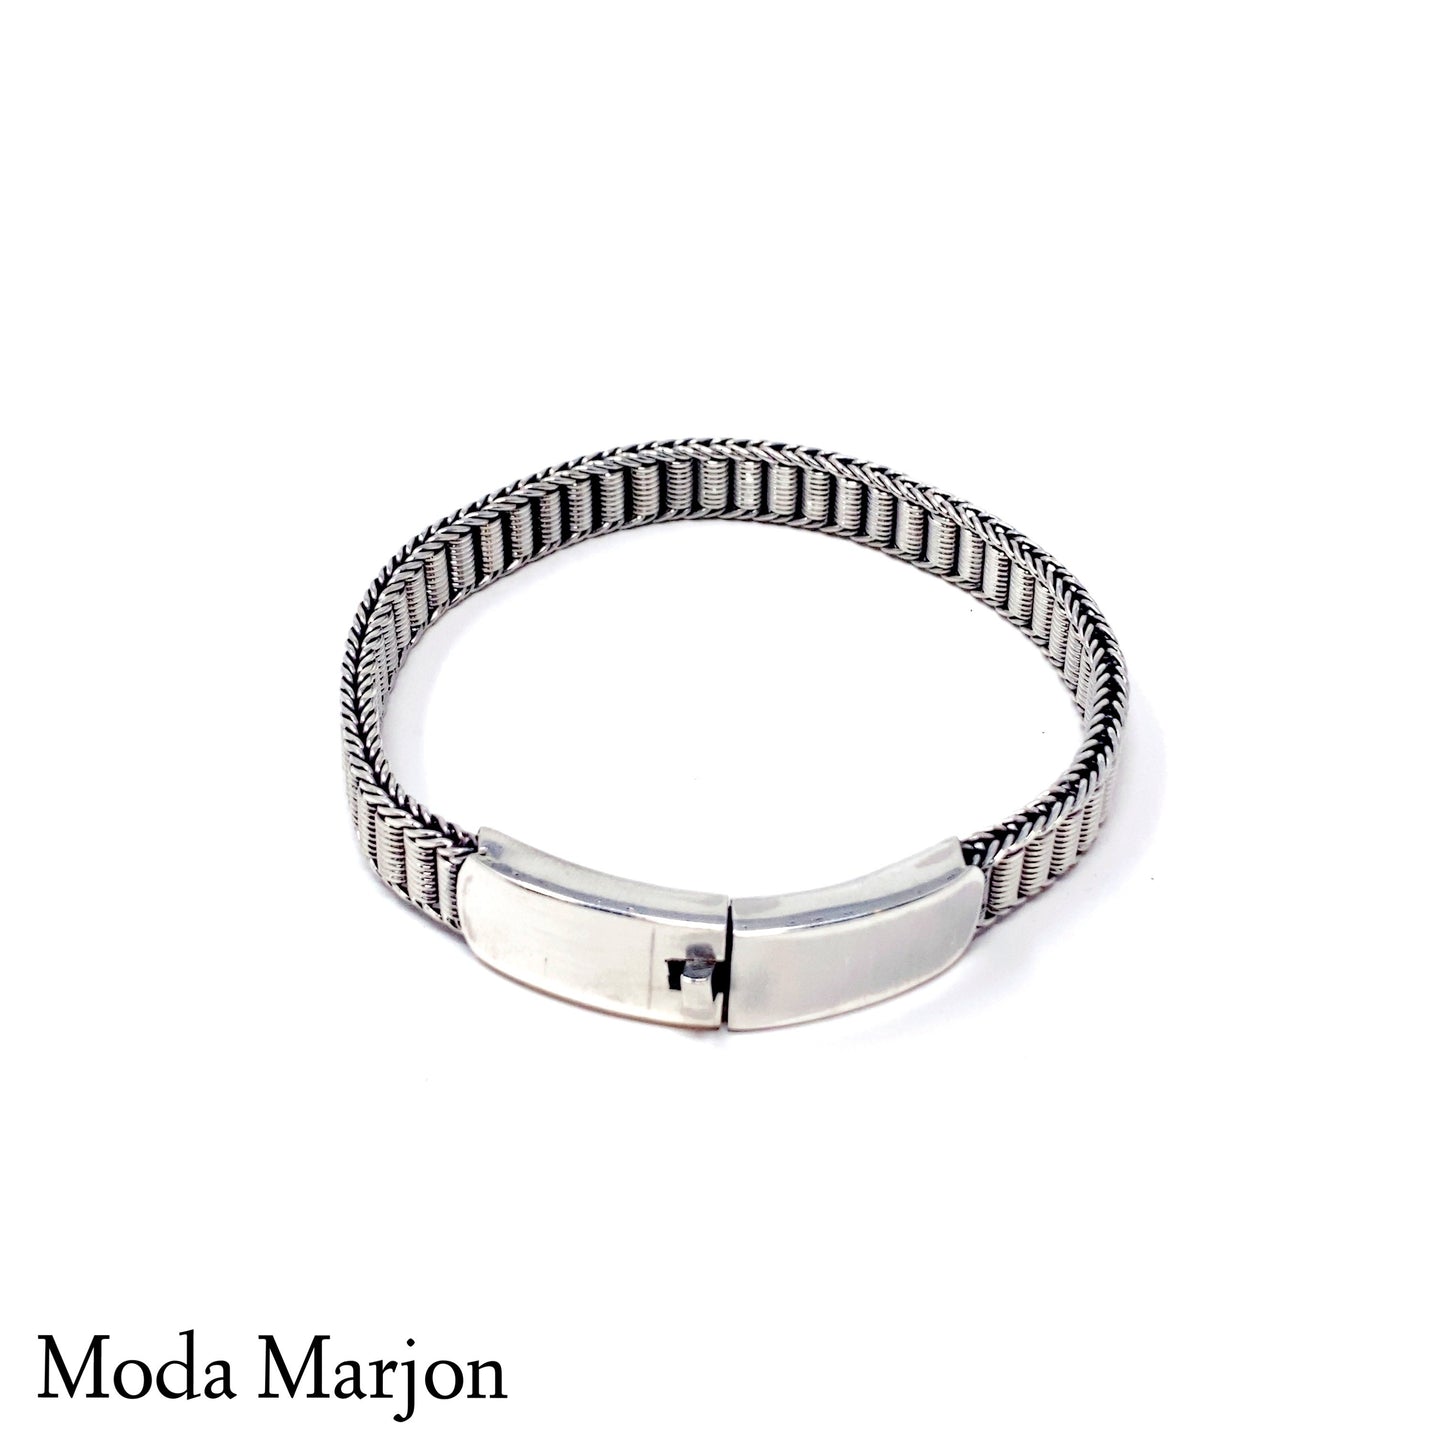 Barrel Woven Chain Bracelet - Moda Marjon 